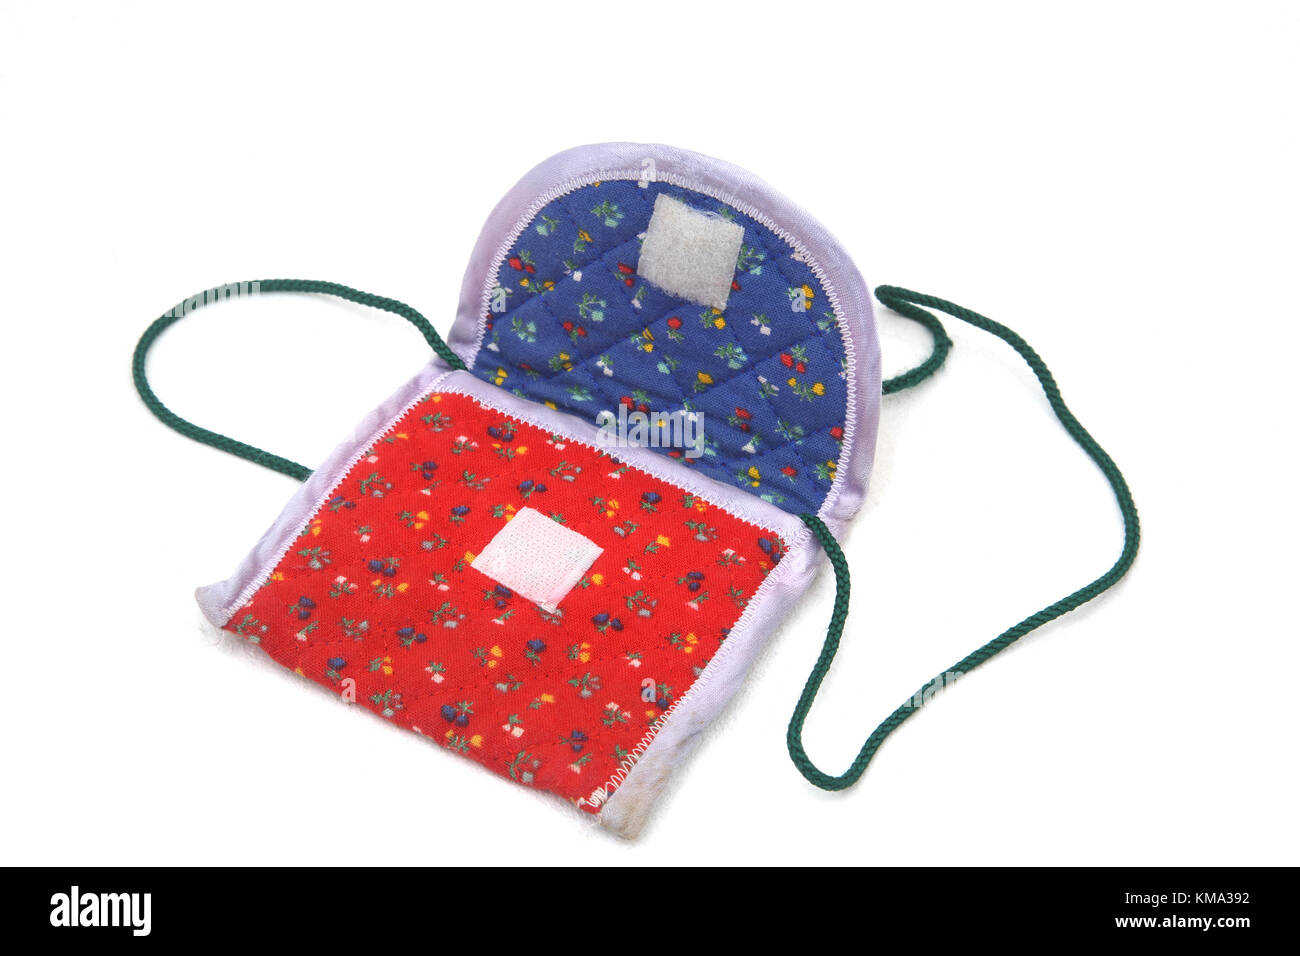 A Child's Small Christmas Bag Stock Photo